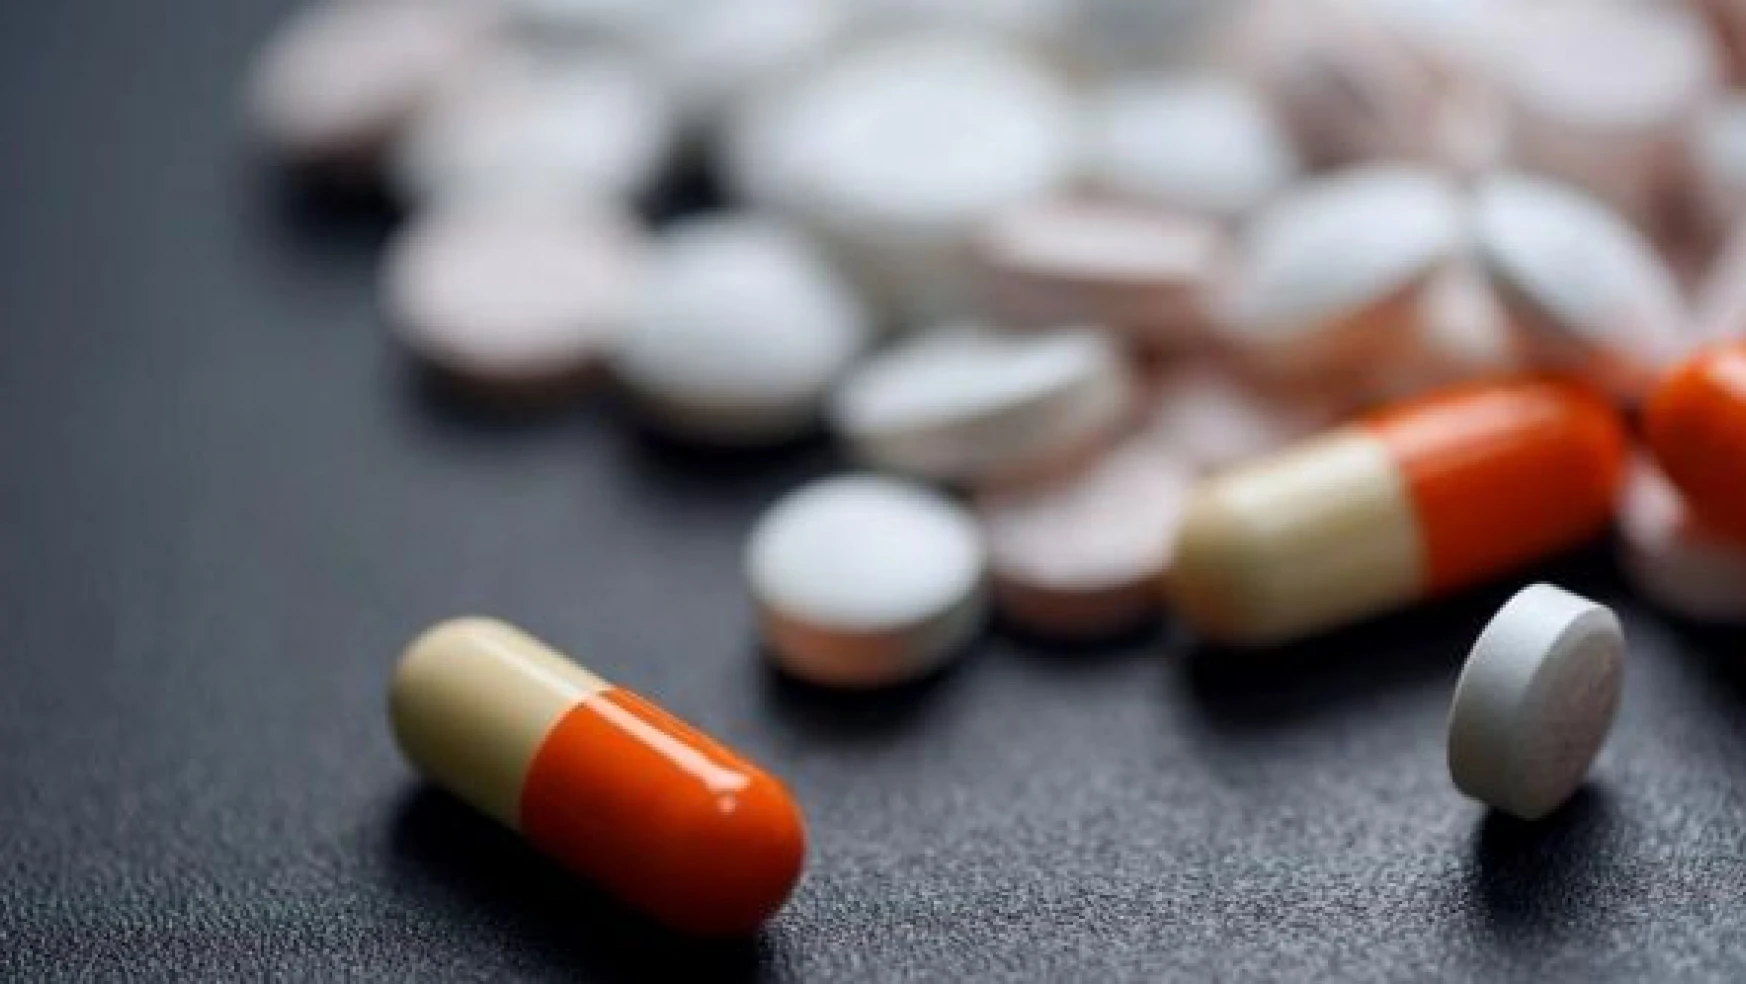 TİTCK'den madde bağımlılığı tedavisinde kullanılan ilaçla ilgili iddialara cevap geldi